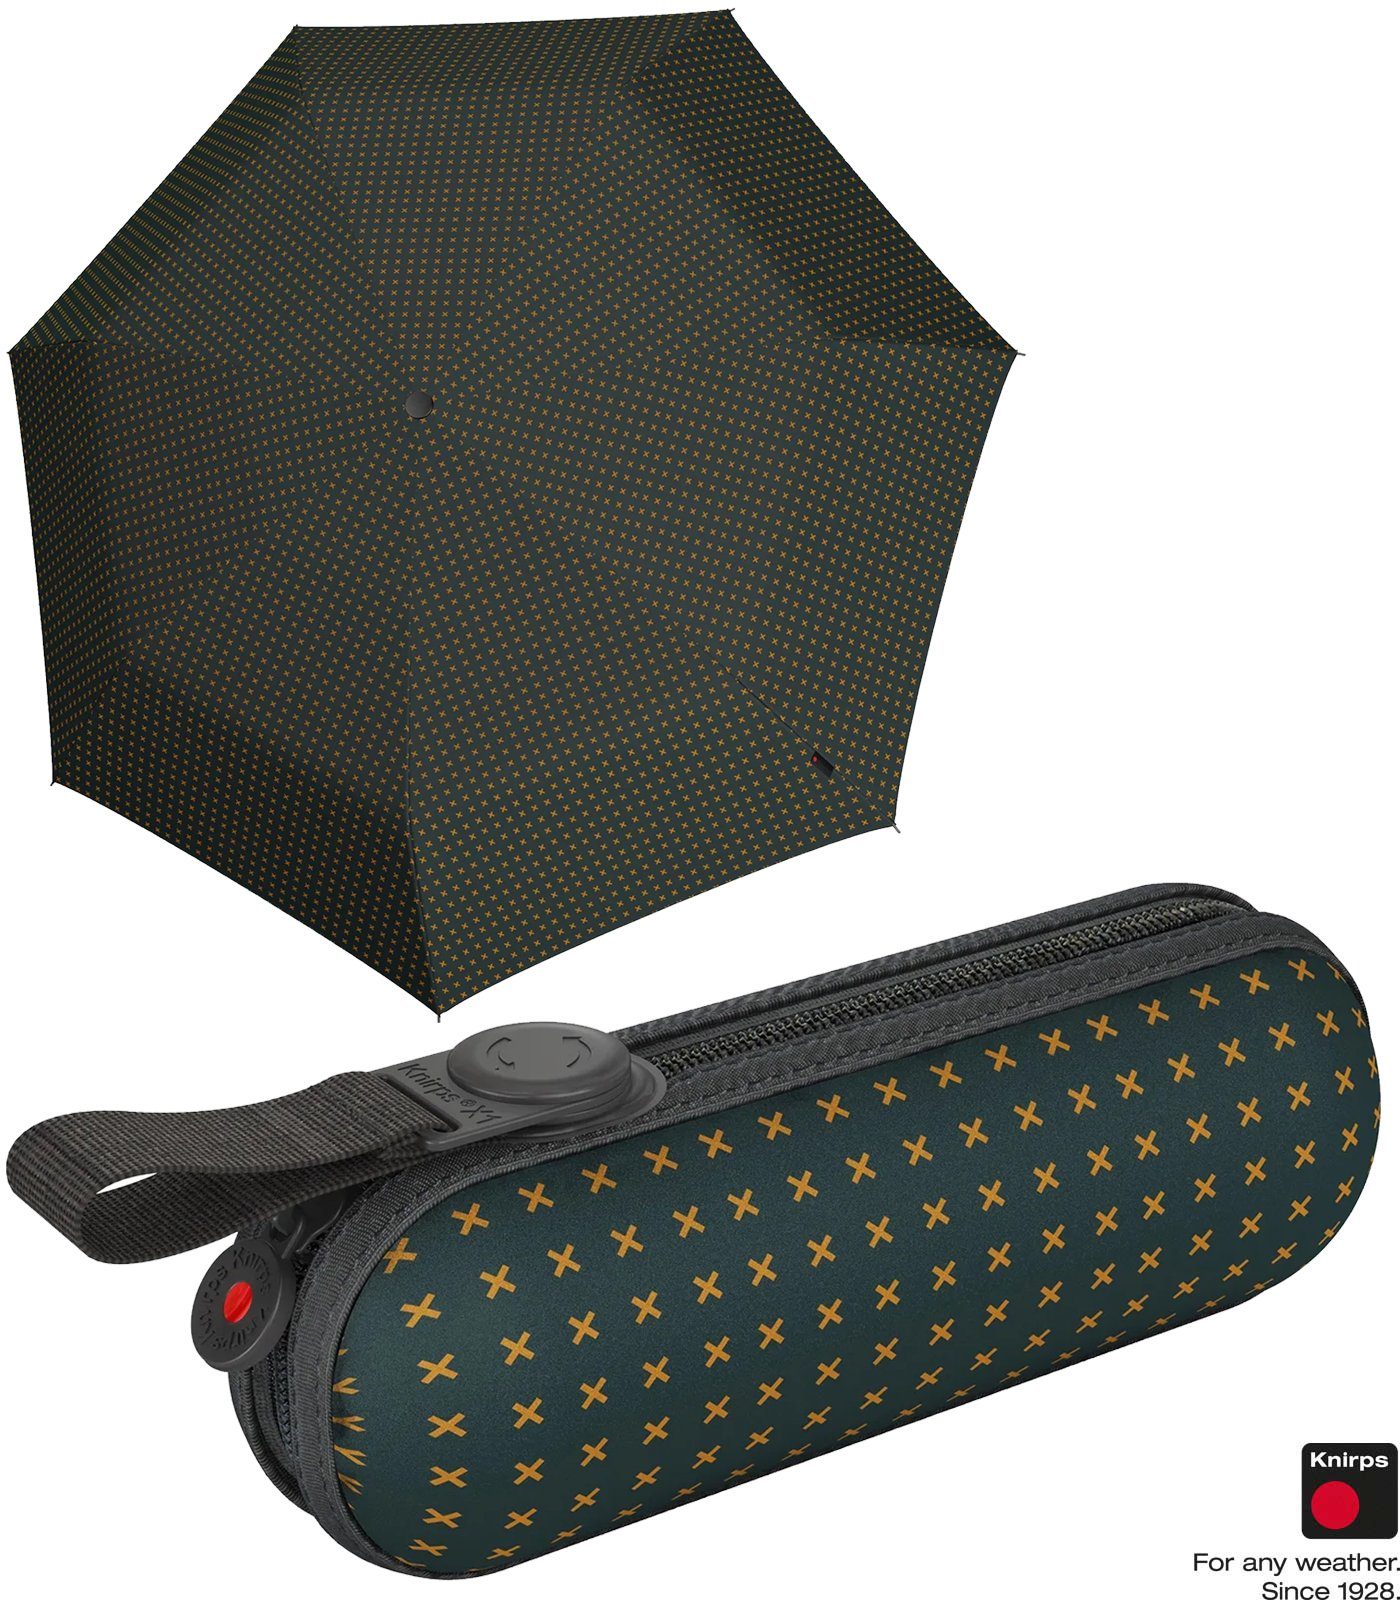 X1 Taschenregenschirm mit Mini kompakte ecorepel-Technologie grün der Knirps® Begleiter Super kleine, - leichte, 2Cross,